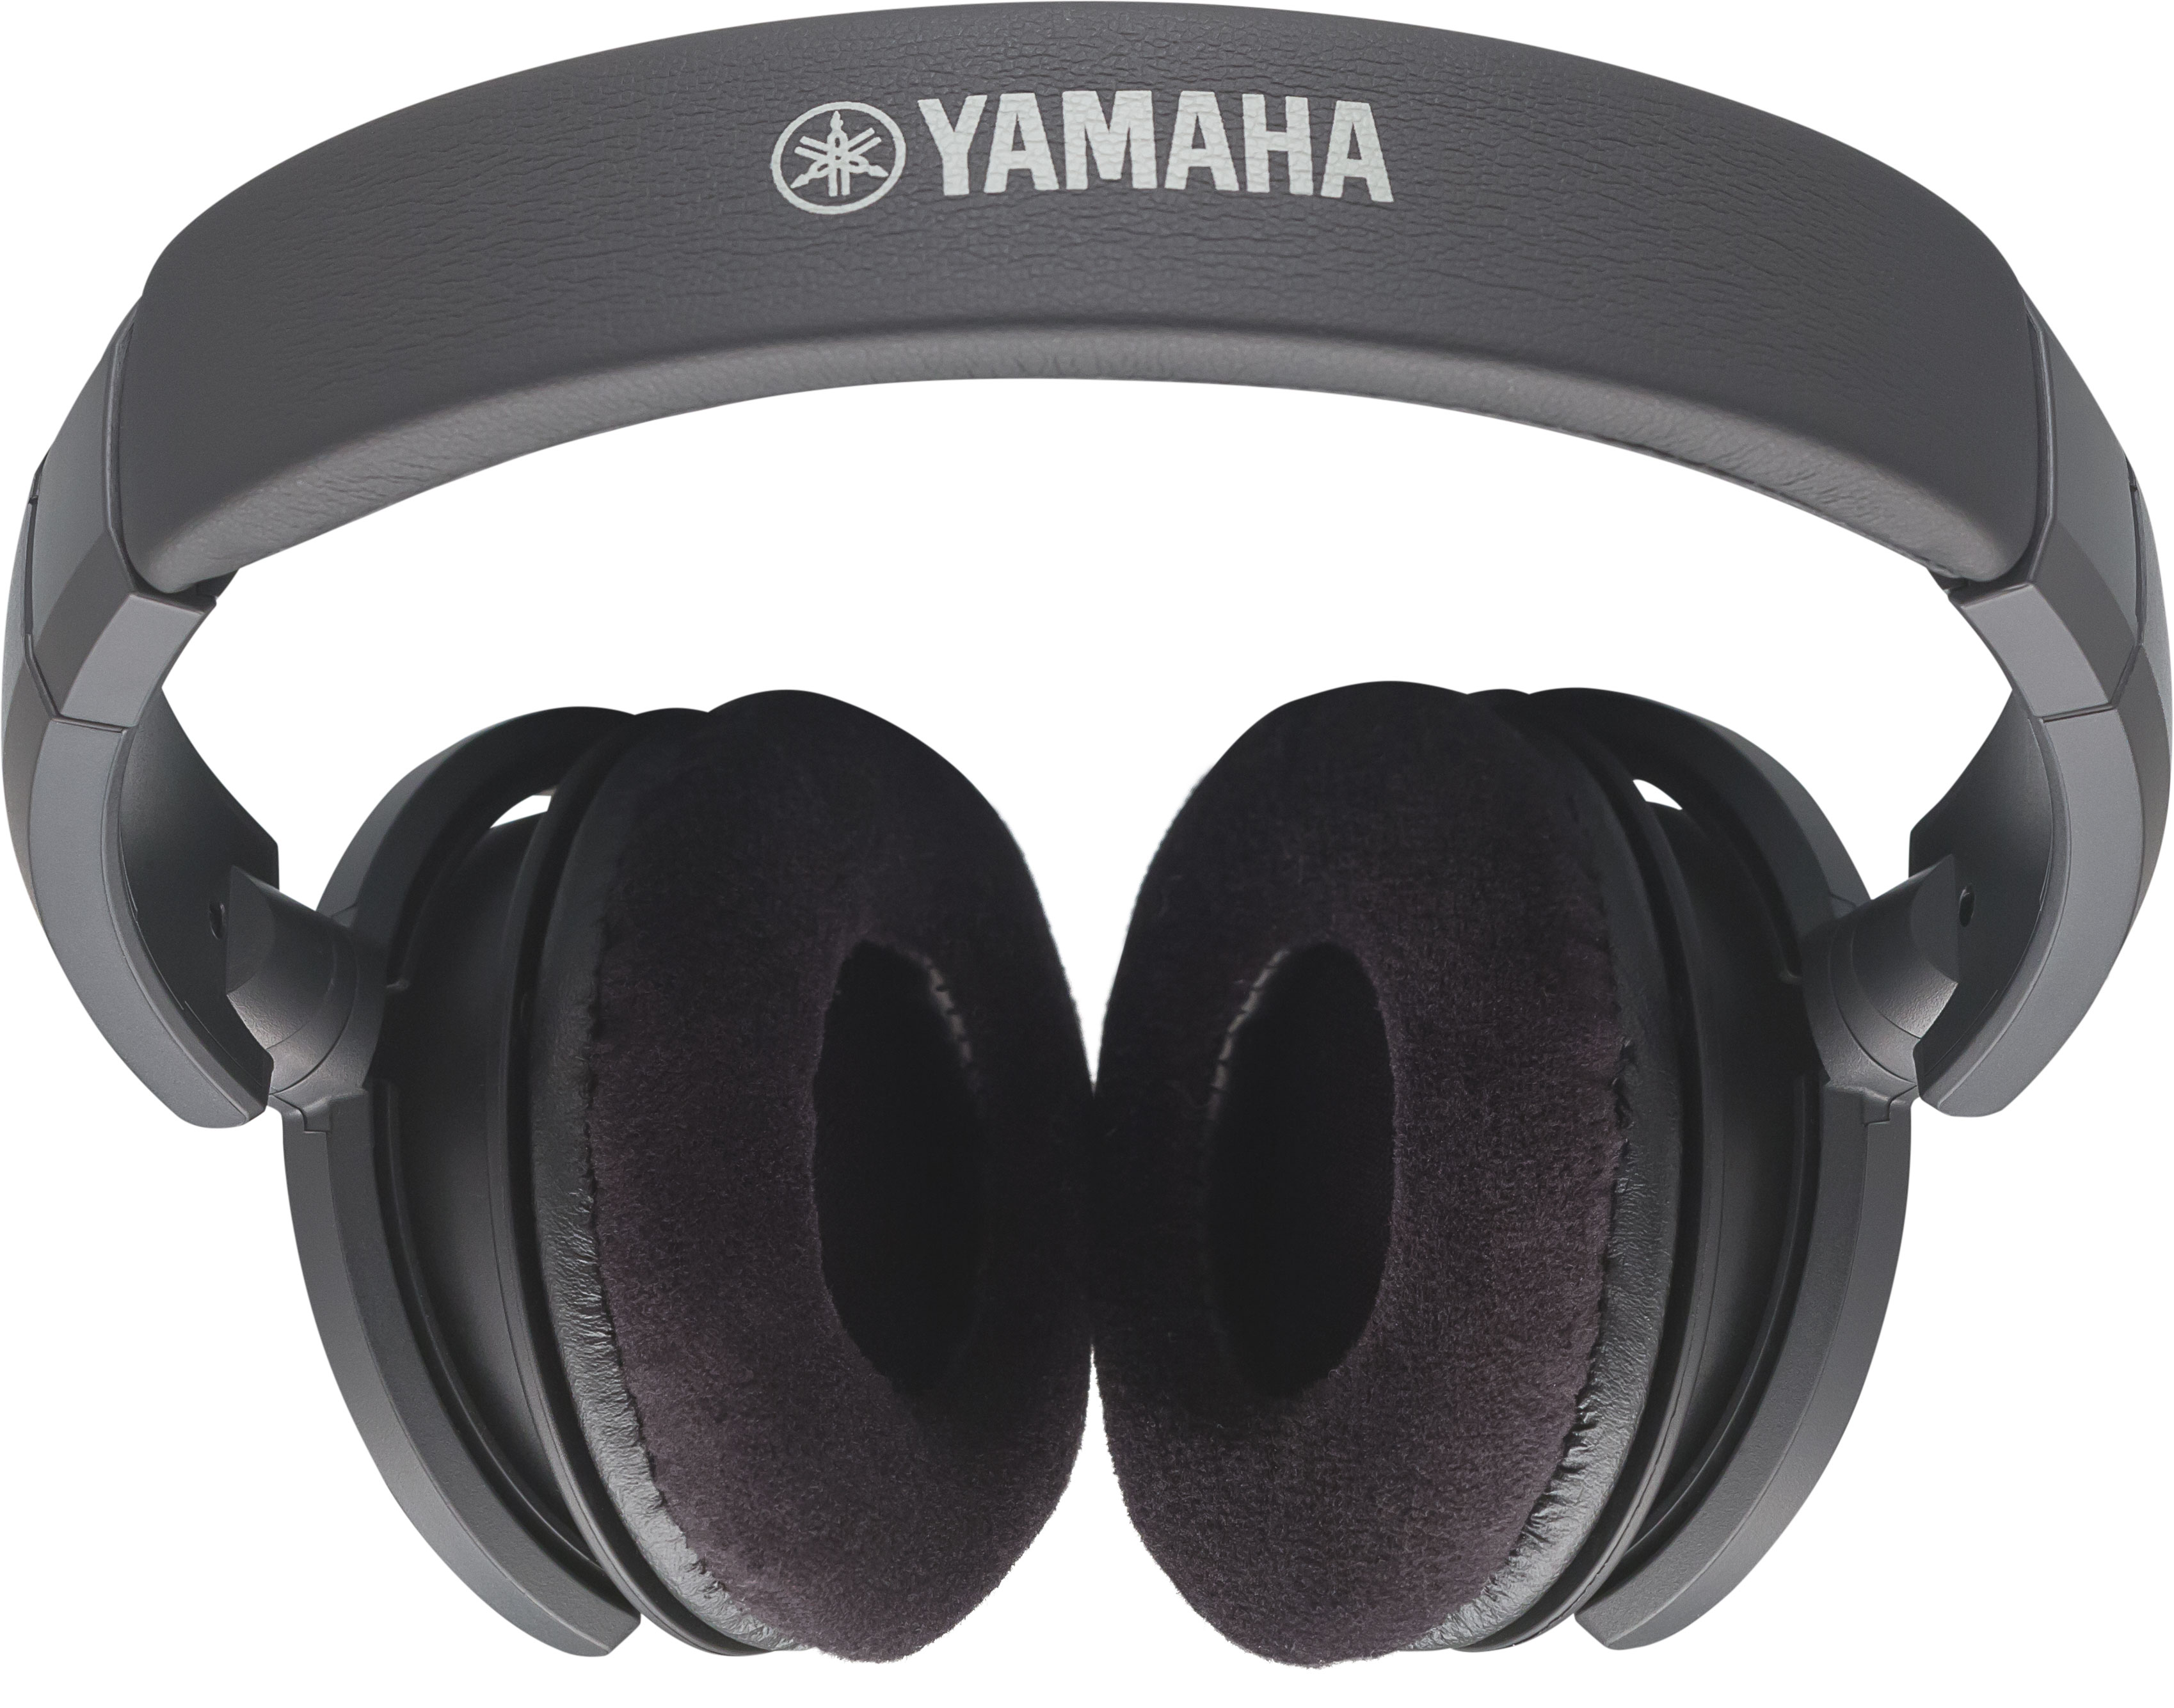 Yamaha Hph-150b - Offene Studiokopfhörer - Variation 2